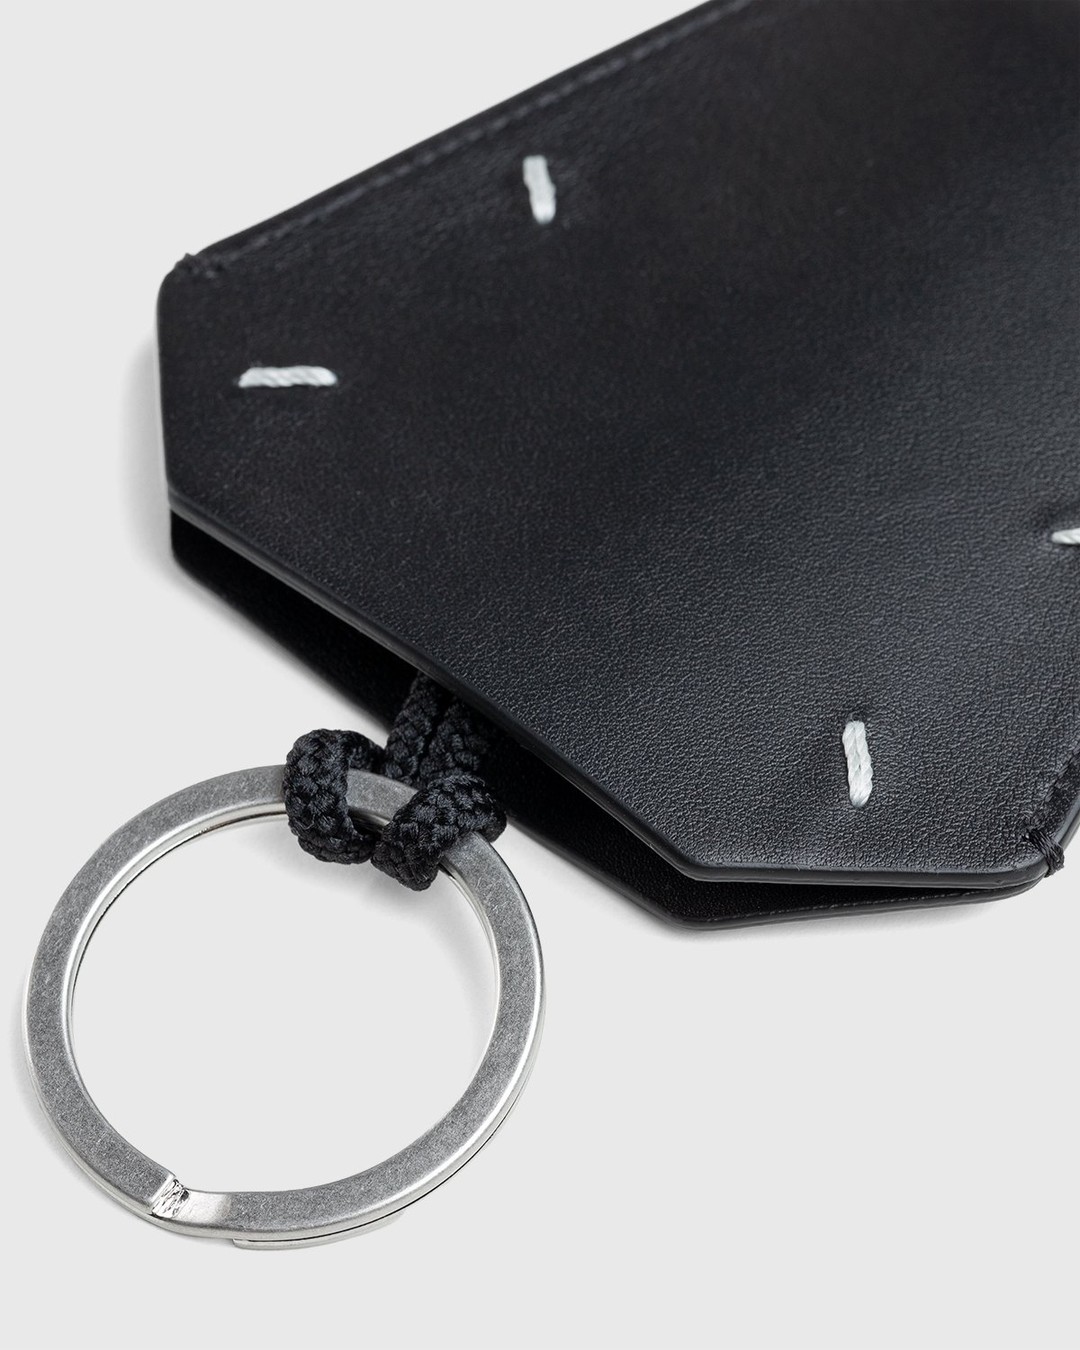 Maison Margiela – Leather Key Ring Black | Highsnobiety Shop